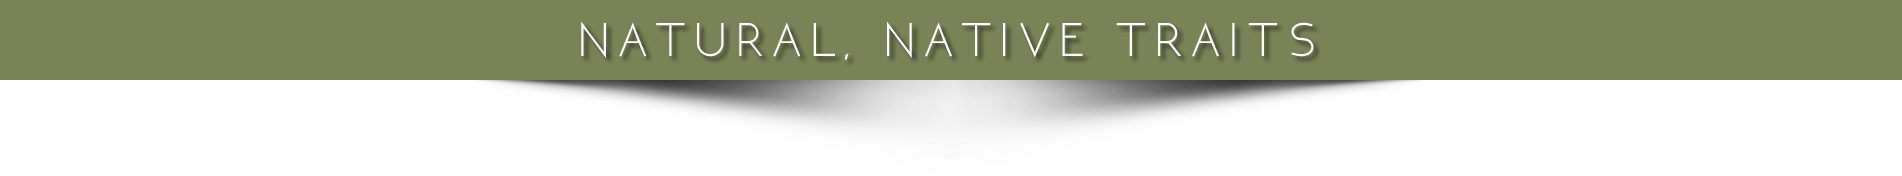 Natural Native Traits